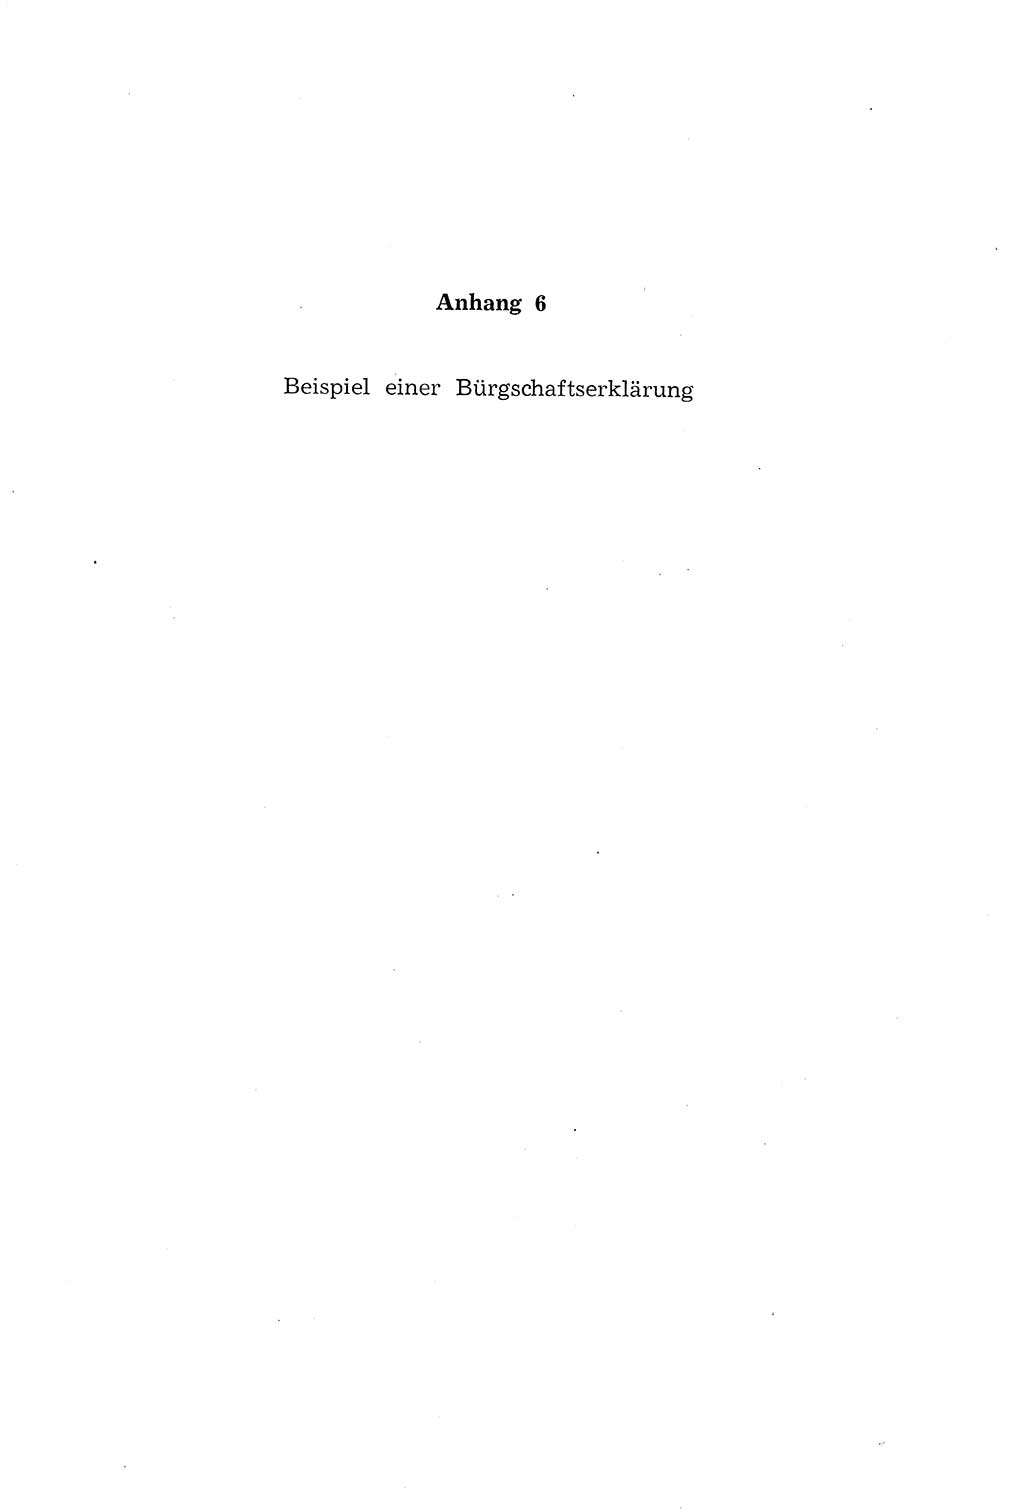 Die Mitwirkung der Werktätigen am Strafverfahren [Deutsche Demokratische Republik (DDR)] 1966, Seite 201 (Mitw. Str.-Verf. DDR 1966, S. 201)